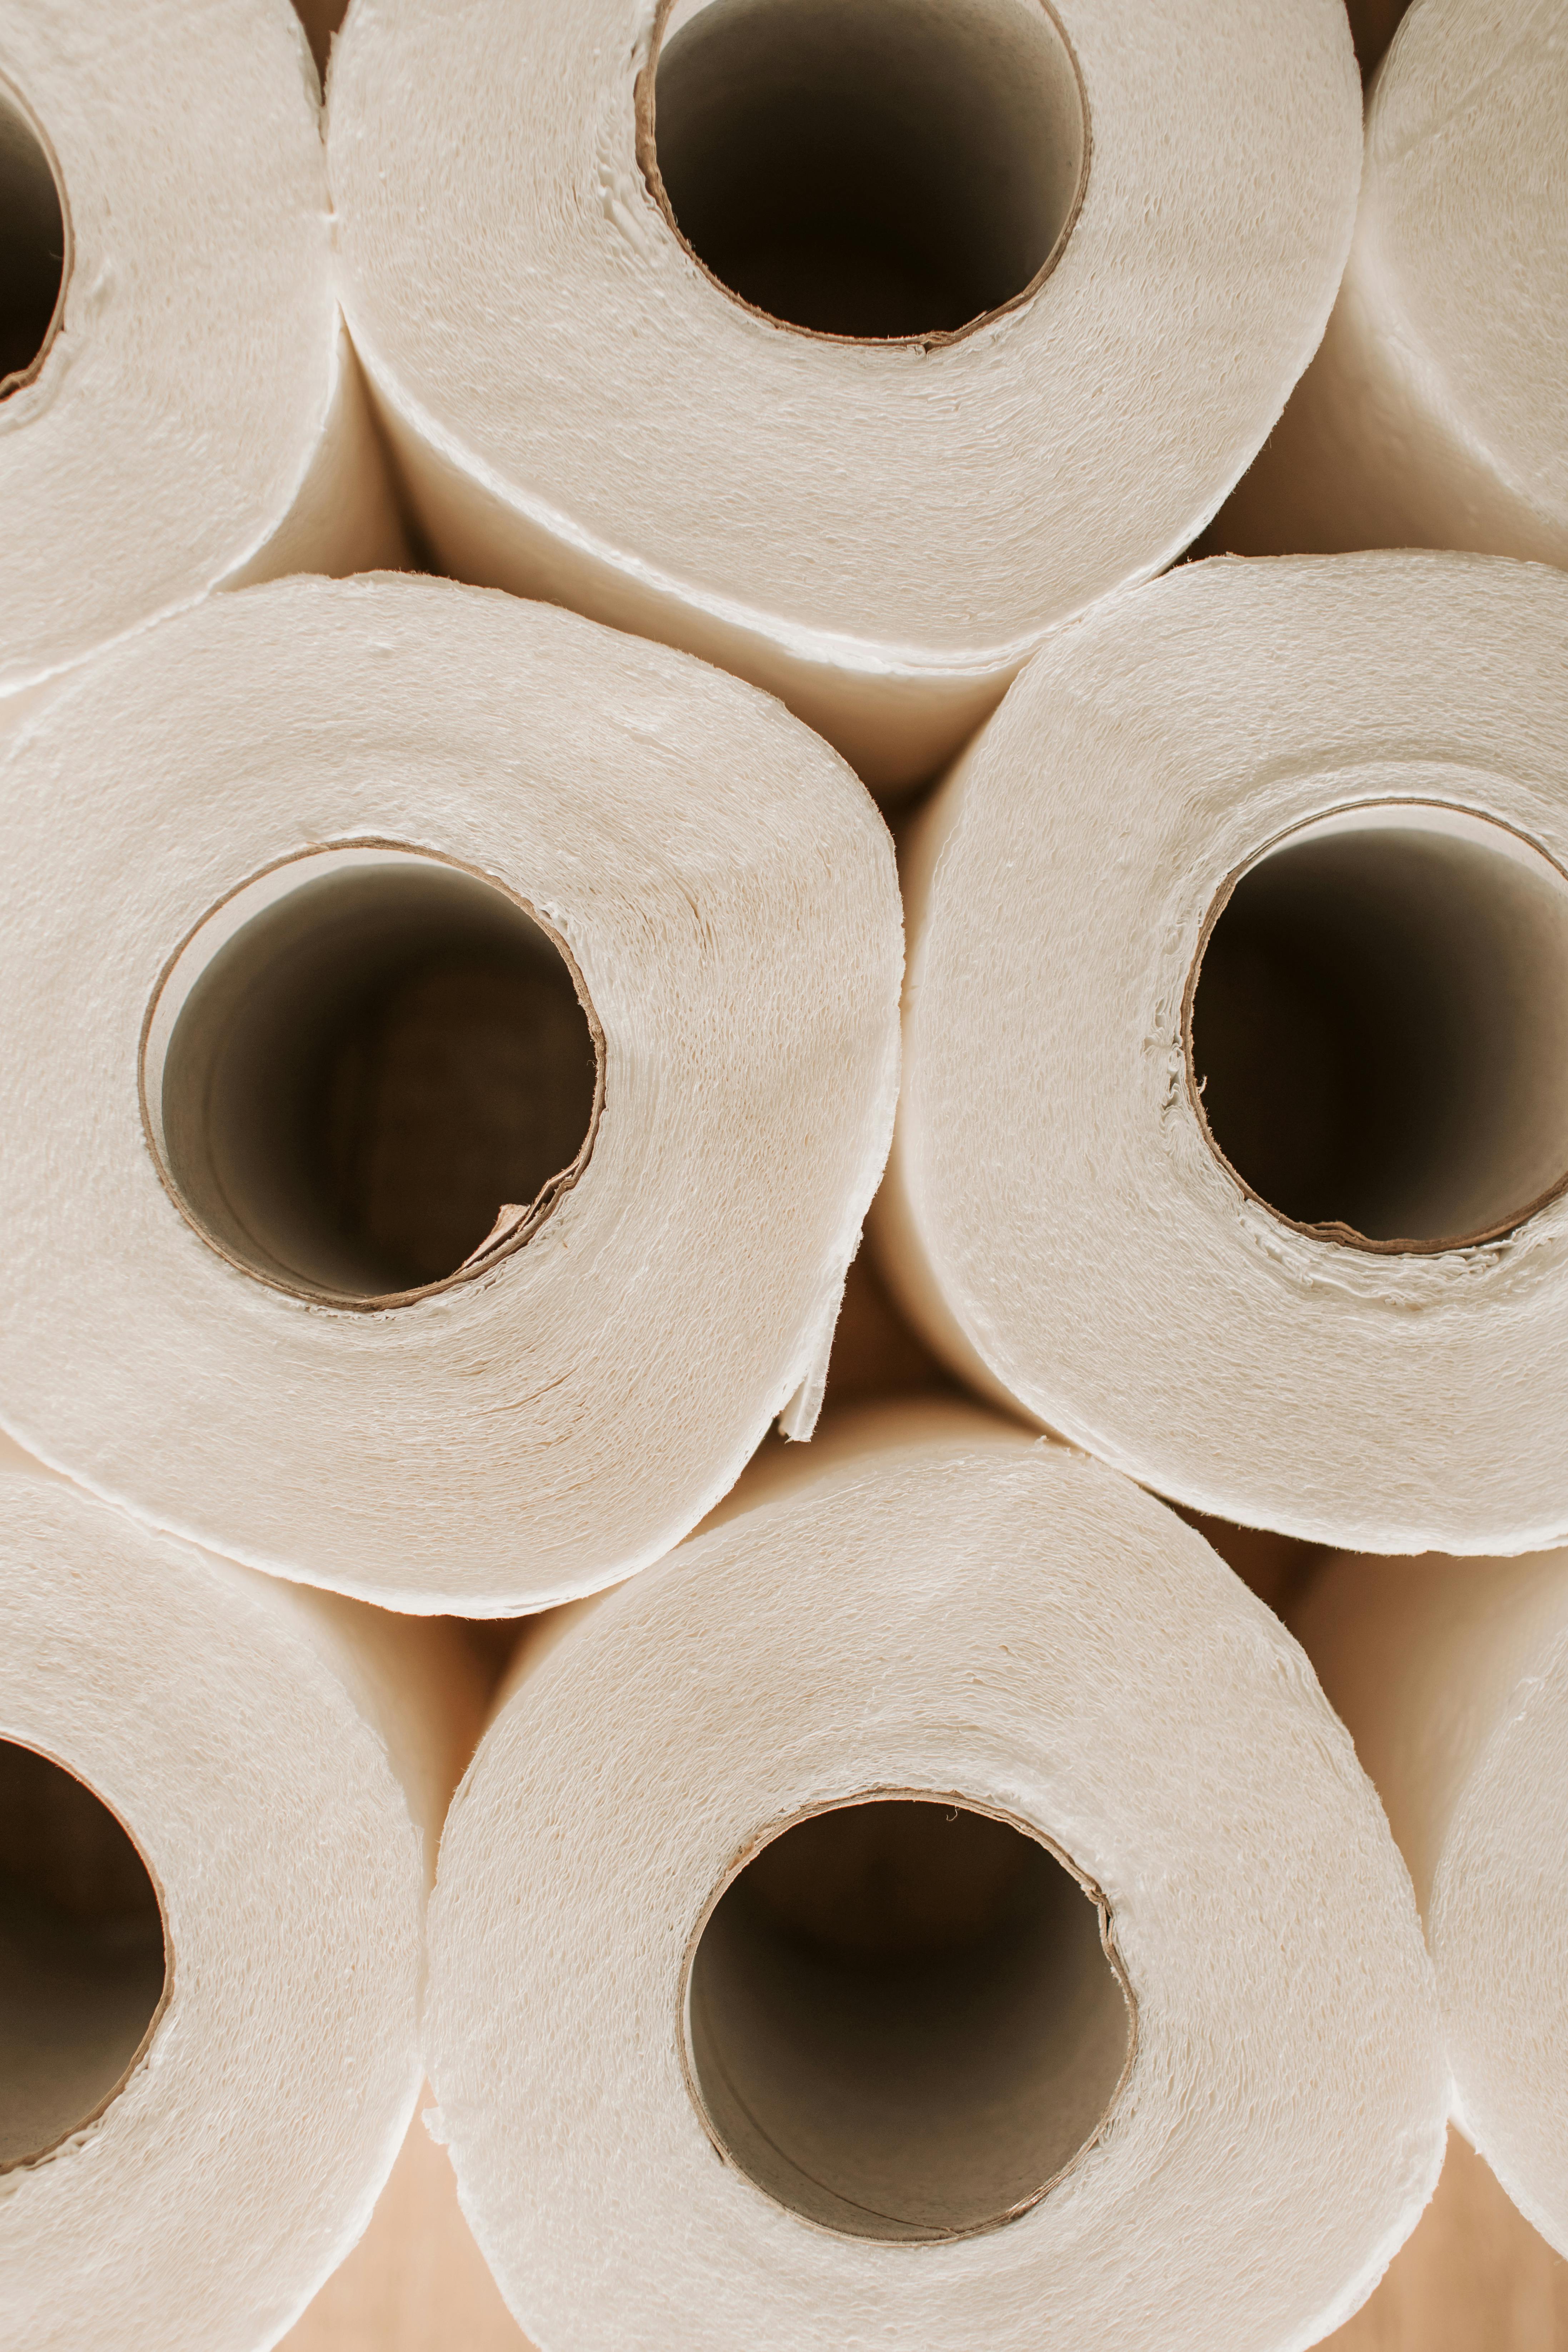 Un tas de papier toilette | Source : Pexels